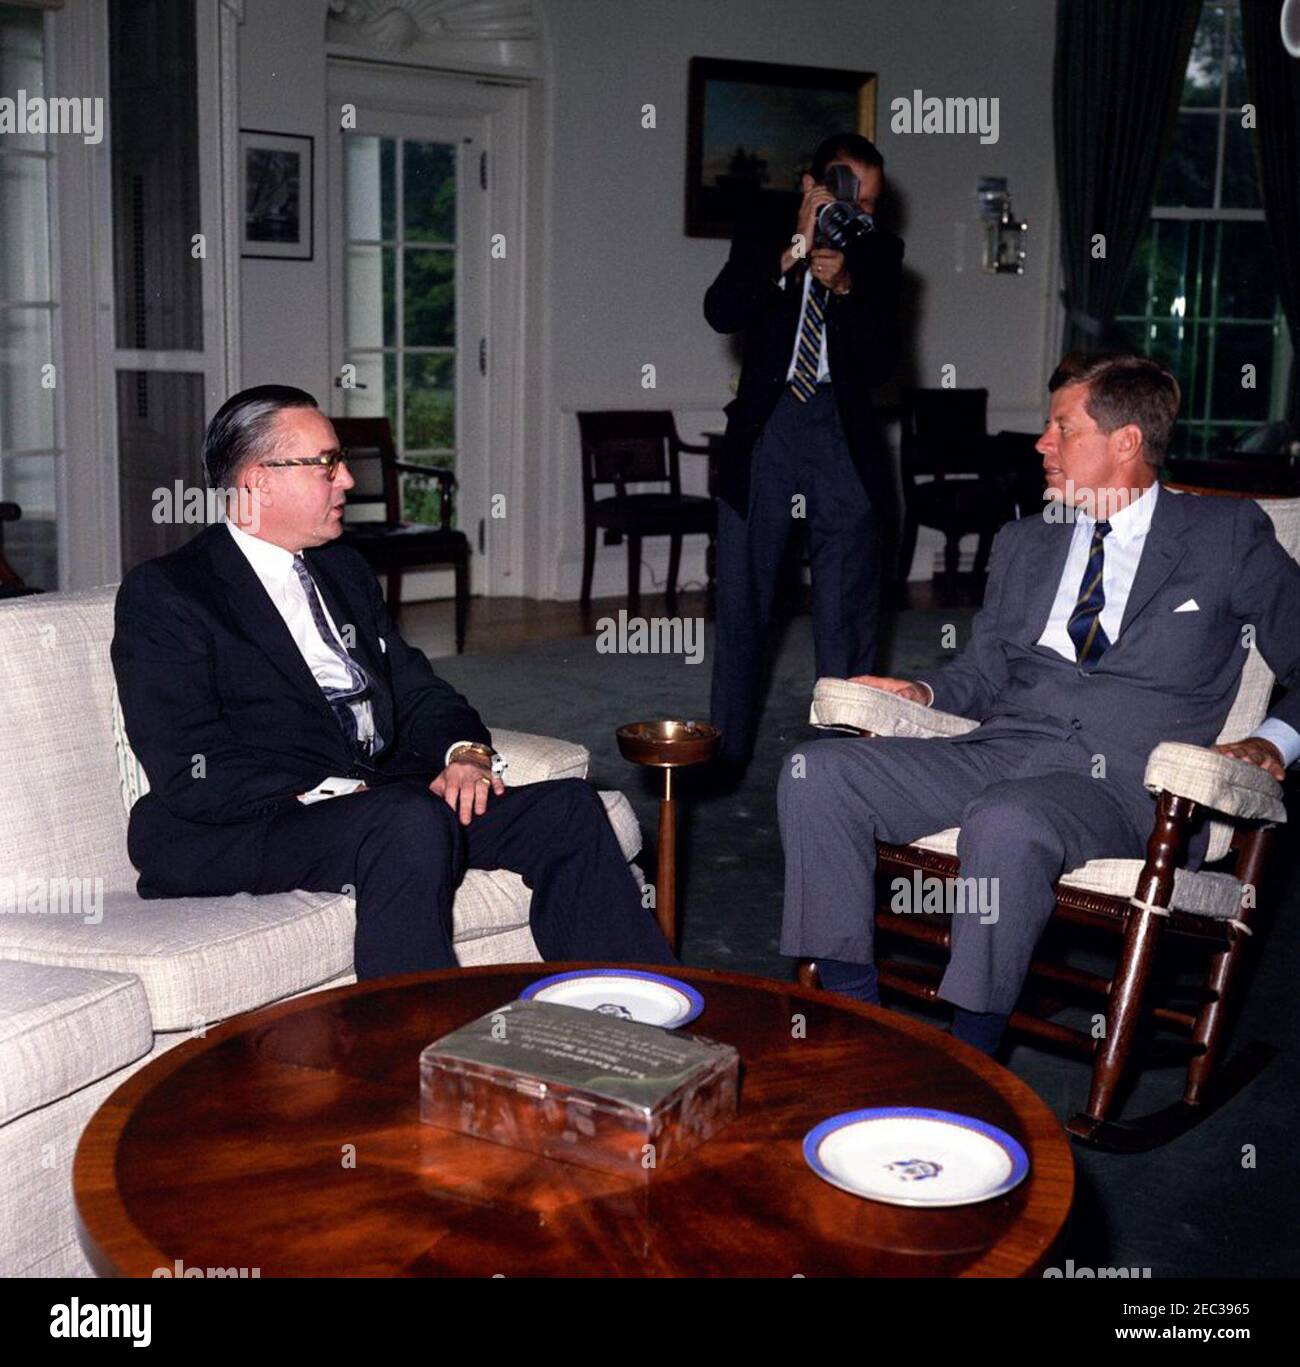 Treffen mit dem US-Botschafter im Sudan, William M. Rountree, 10:06am Uhr. Präsident John F. Kennedy (im Schaukelstuhl) trifft sich mit dem neu ernannten Botschafter der Vereinigten Staaten in der Republik Sudan, William M. Rountree. Ein nicht identifizierter Fotograf filmt das Treffen. Oval Office, White House, Washington, D.C. Stockfoto